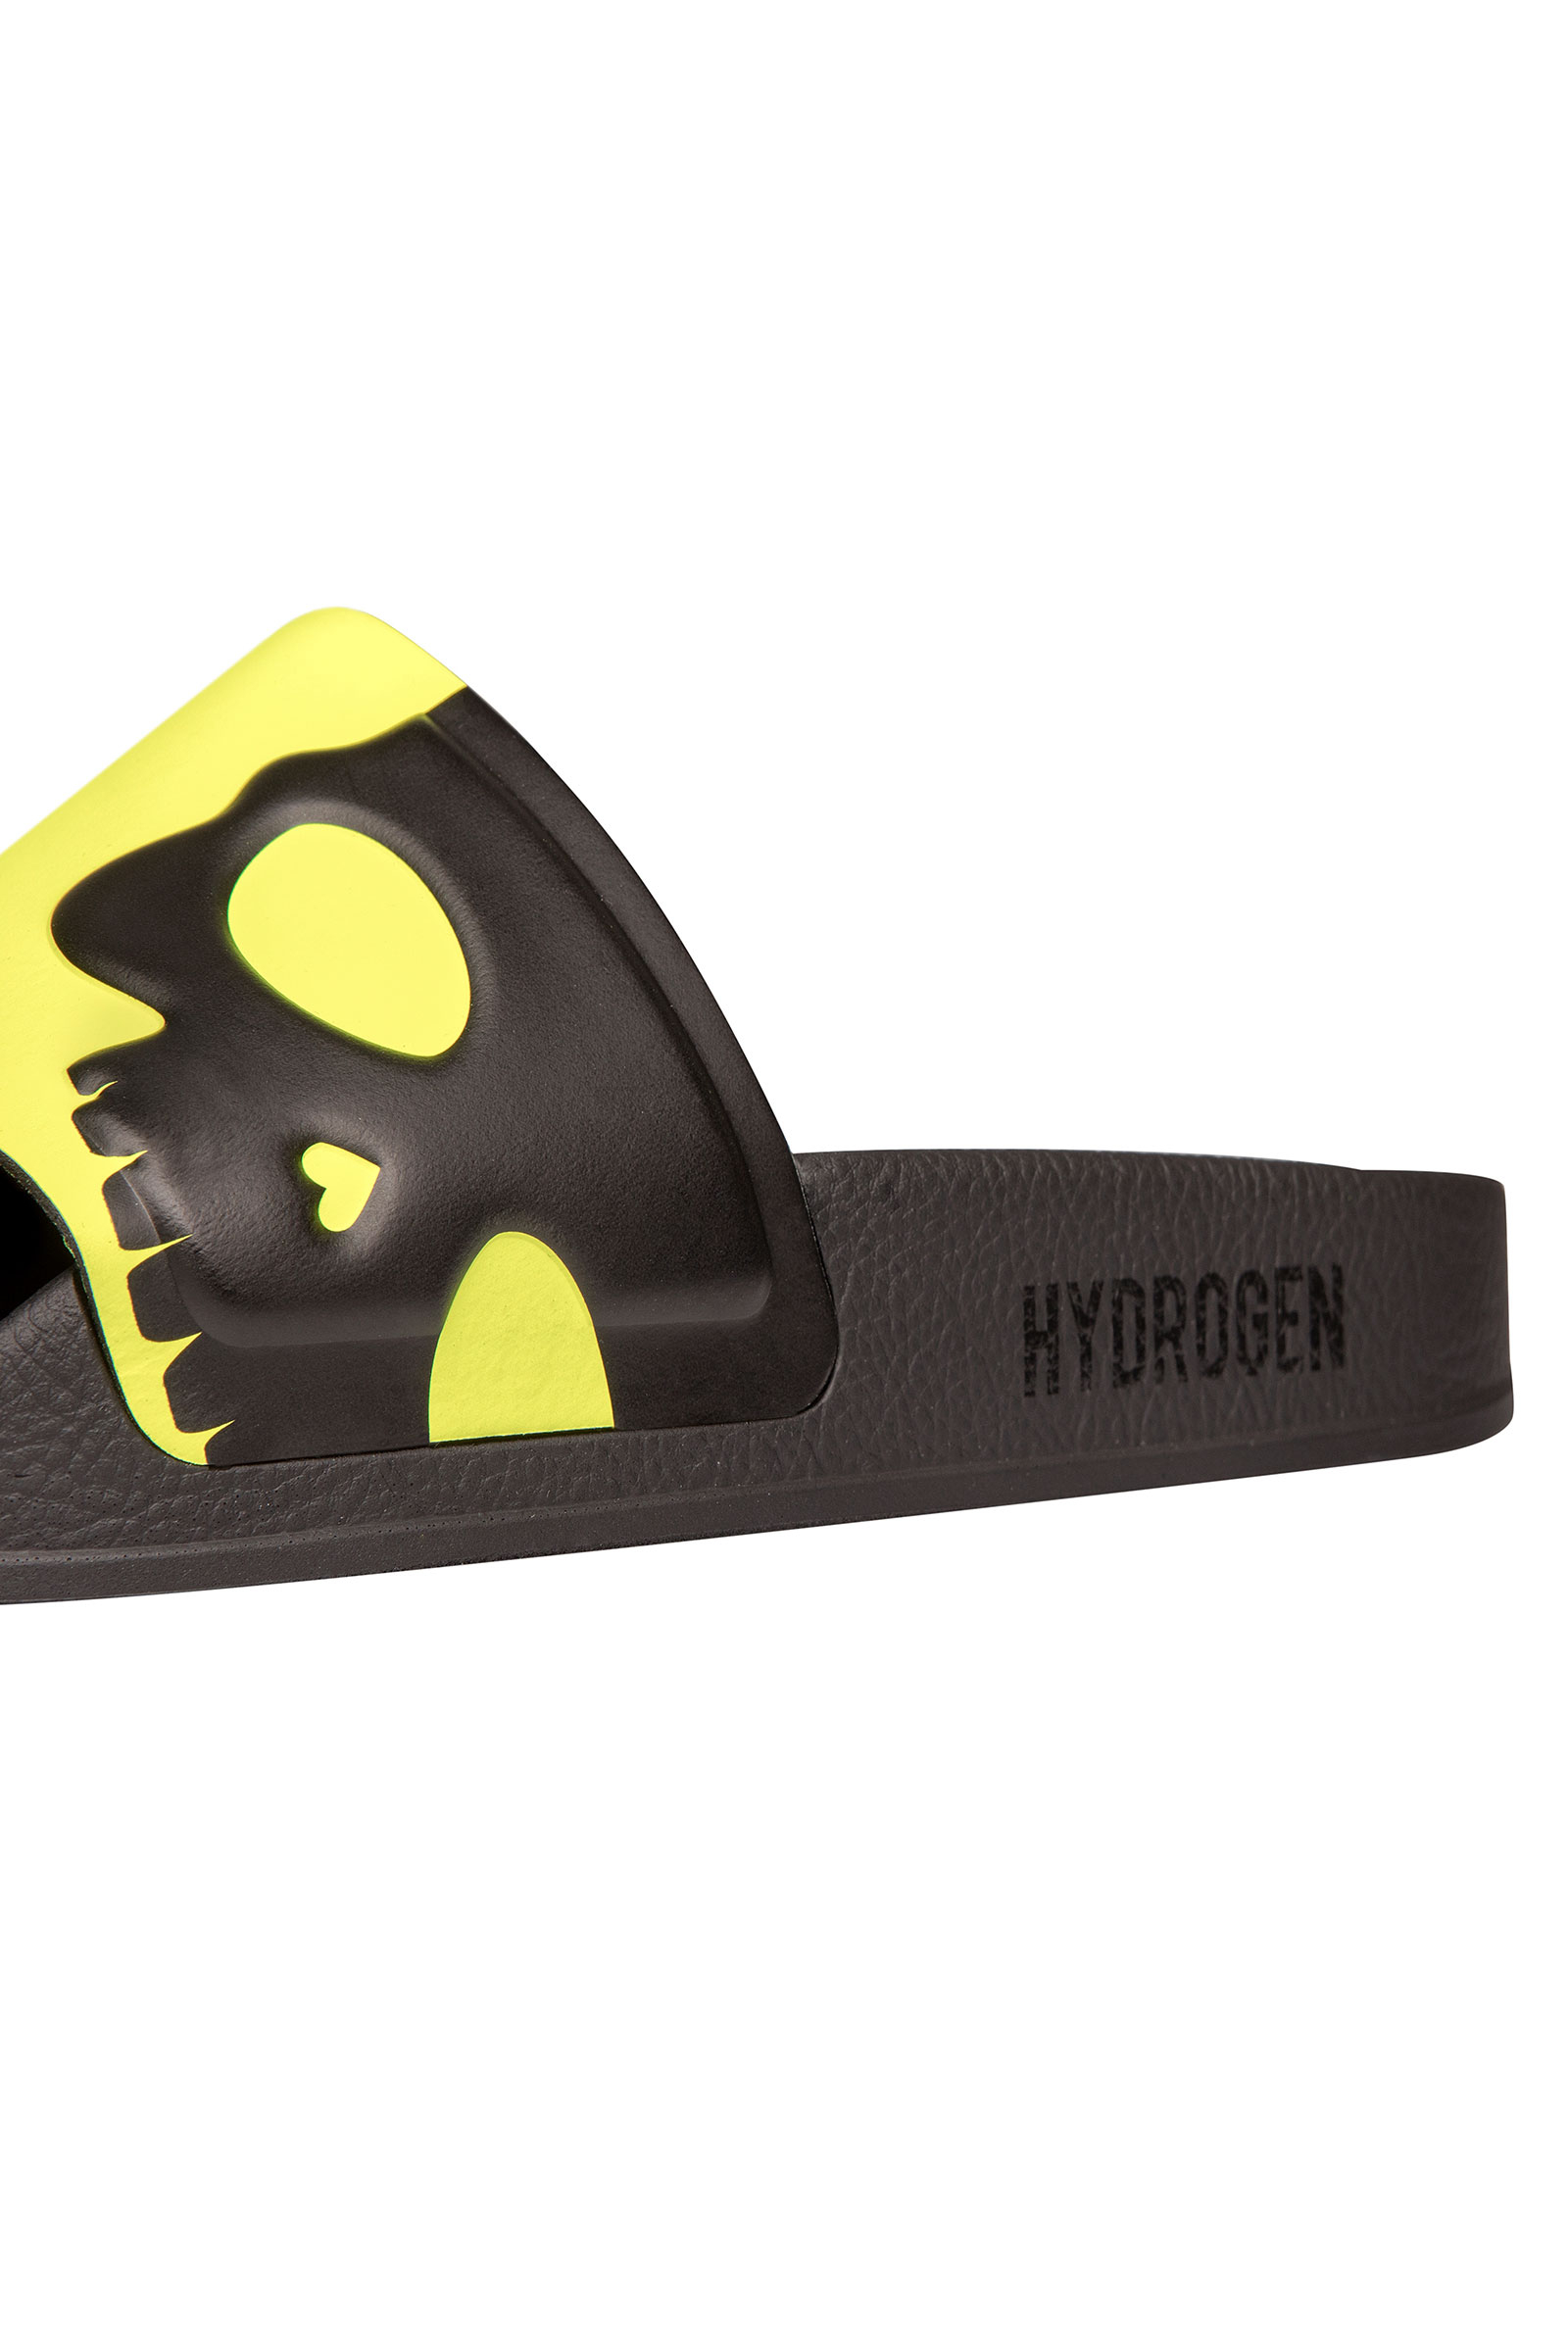 CYBER SLIPPERS - FLUO YELLOW - Abbigliamento sportivo | Hydrogen